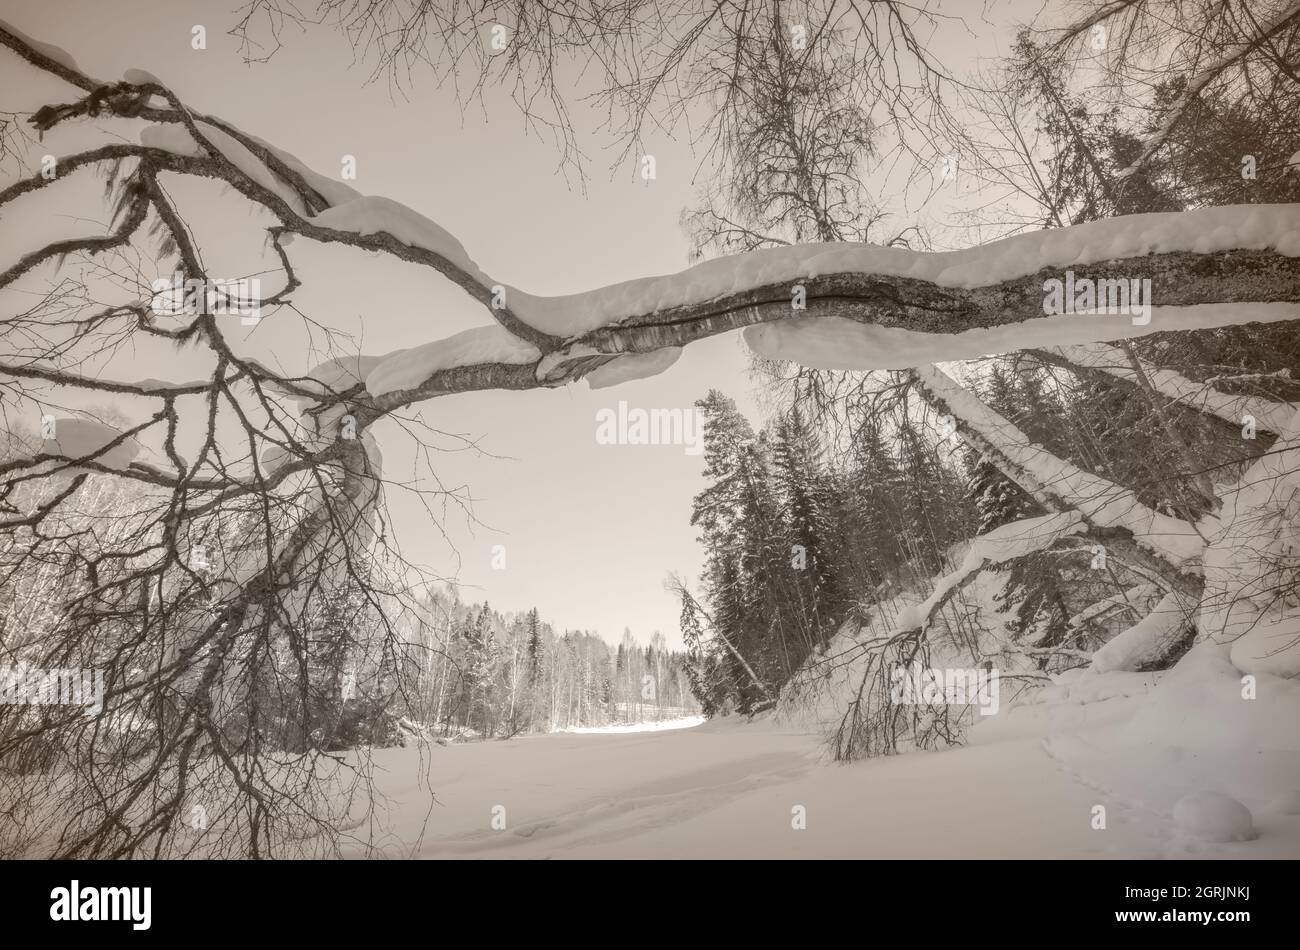 falling tree in an winter landscape Stock Photo